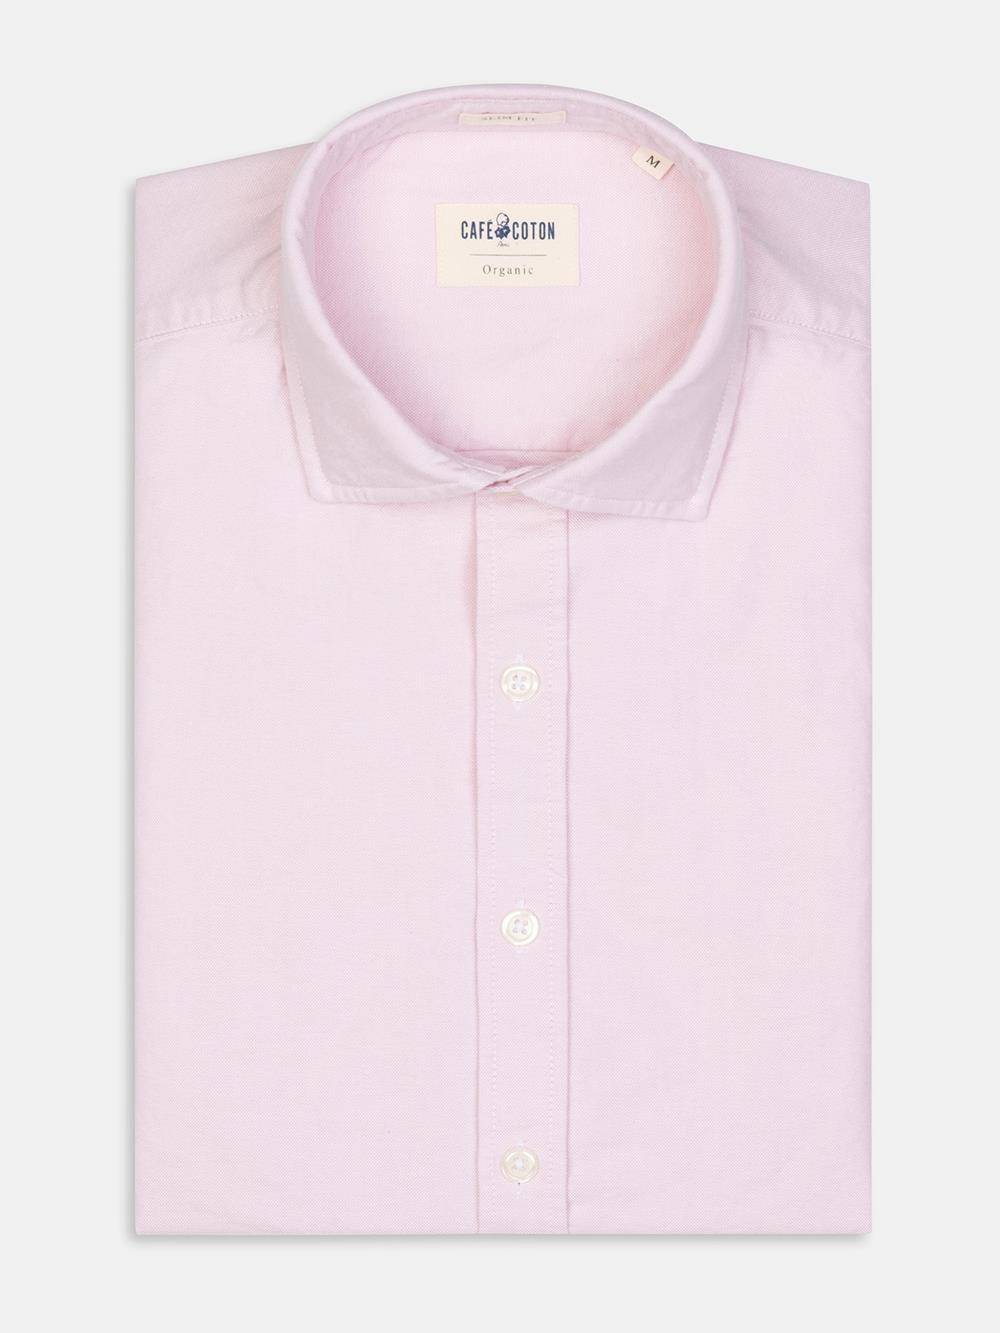 Camicia slim fit oxford organica lavata rosa